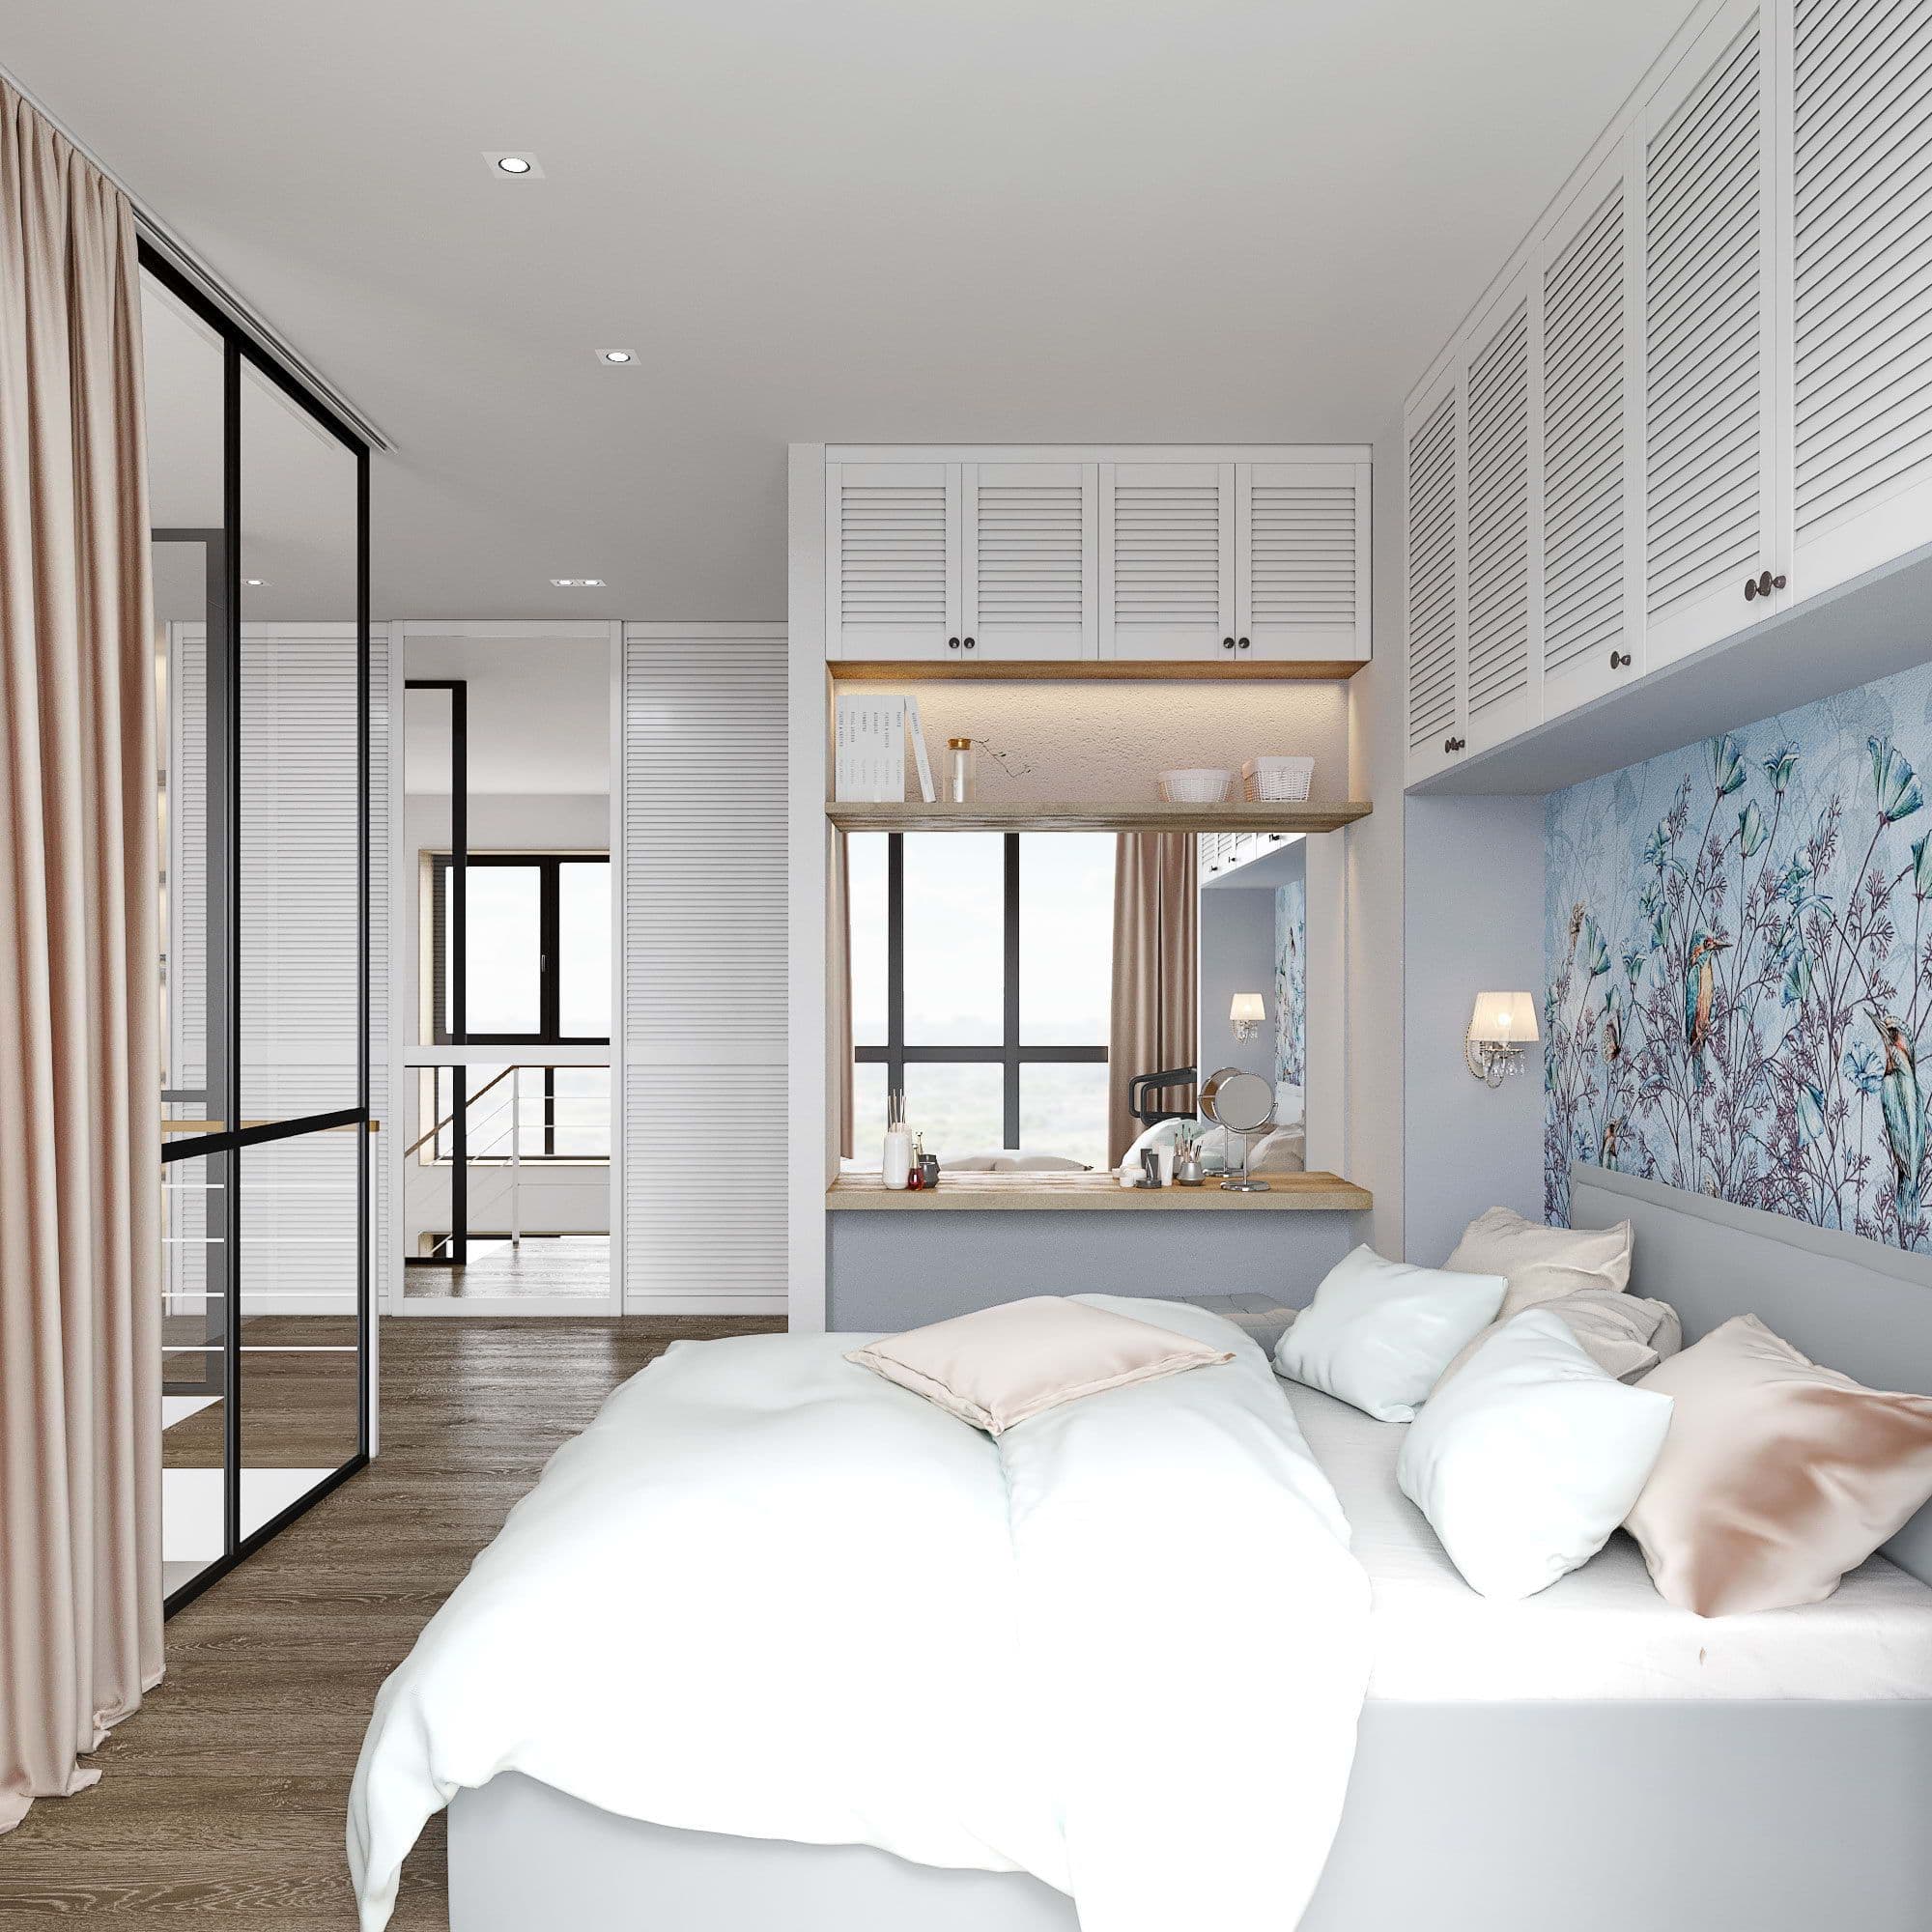 Дизайн спальни в современном стиле с белой кроватью, мягким изголовьем, декоративной штукатуркой,  с макияжным столиком, гипсовыми панелями, в светлых теплых бежевых тонах, вид 2